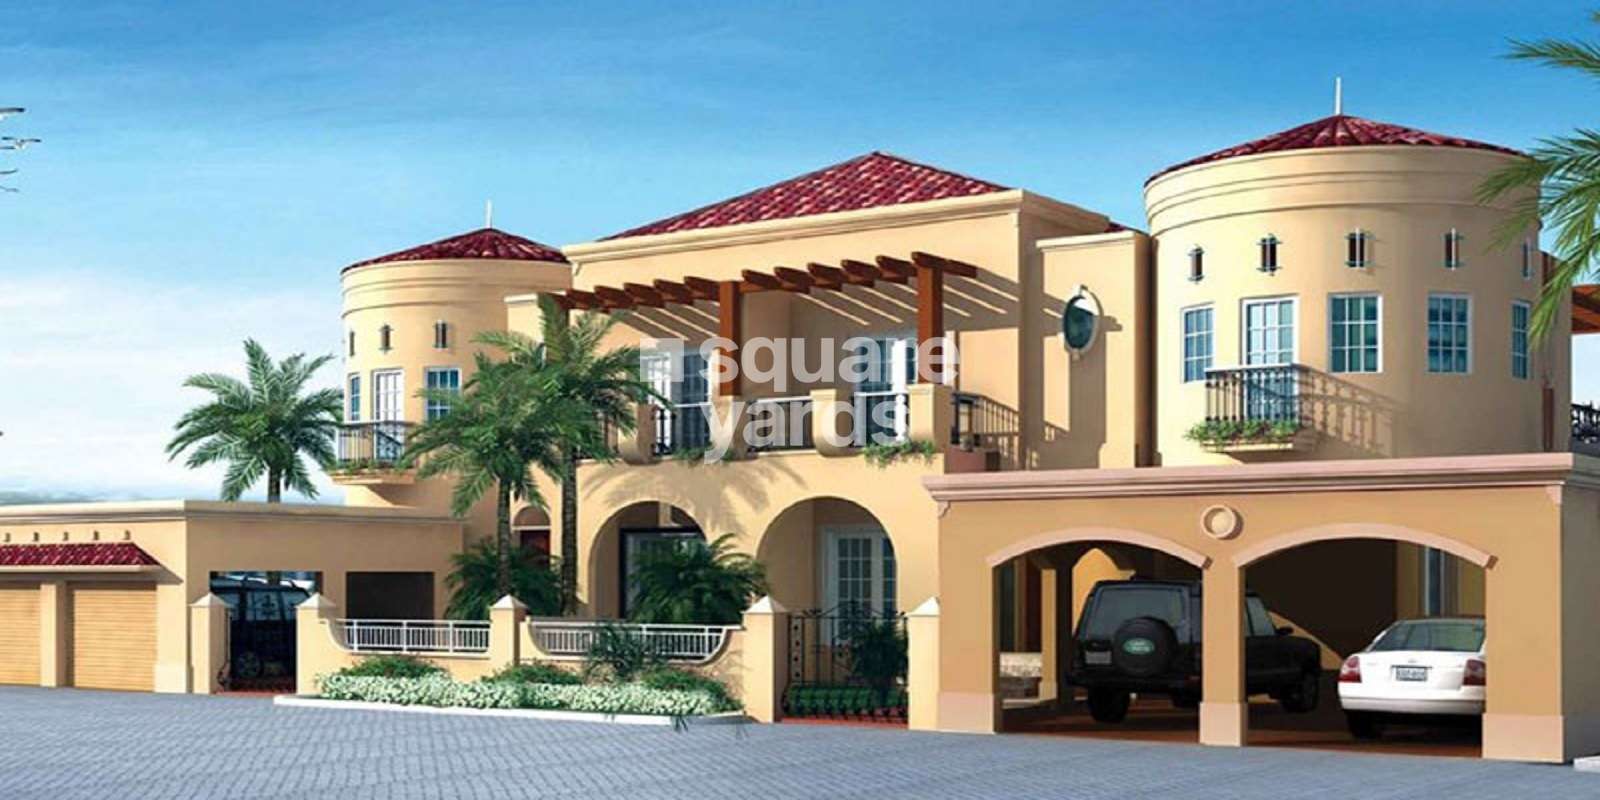 Dubai Spanish Twin Villas Cover Image